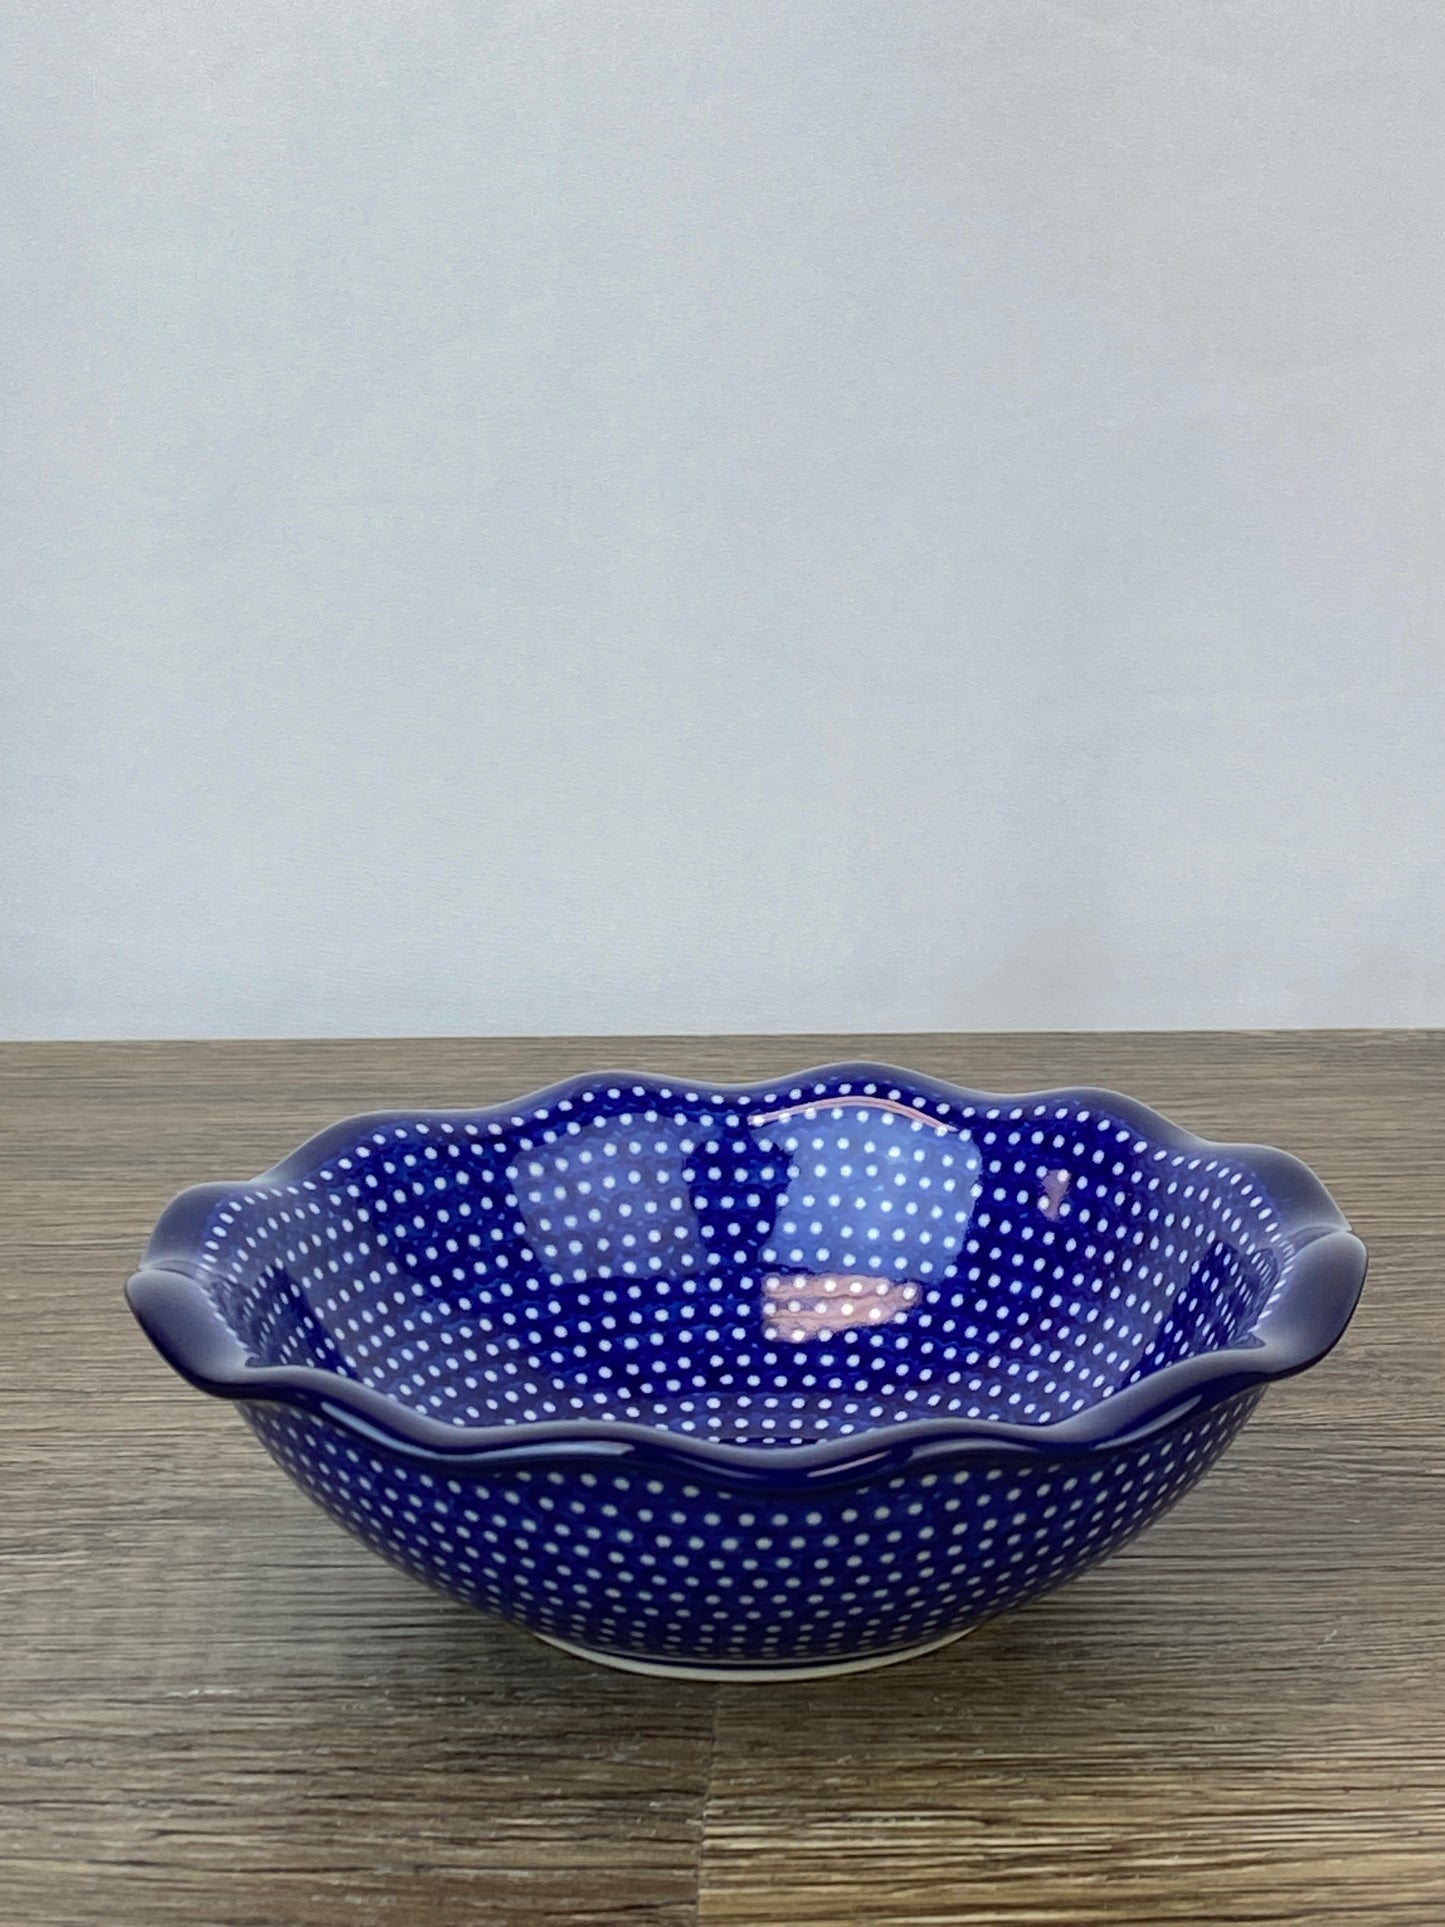 Unikat Medium Ruffled Bowl - Shape 625 - Pattern U1123